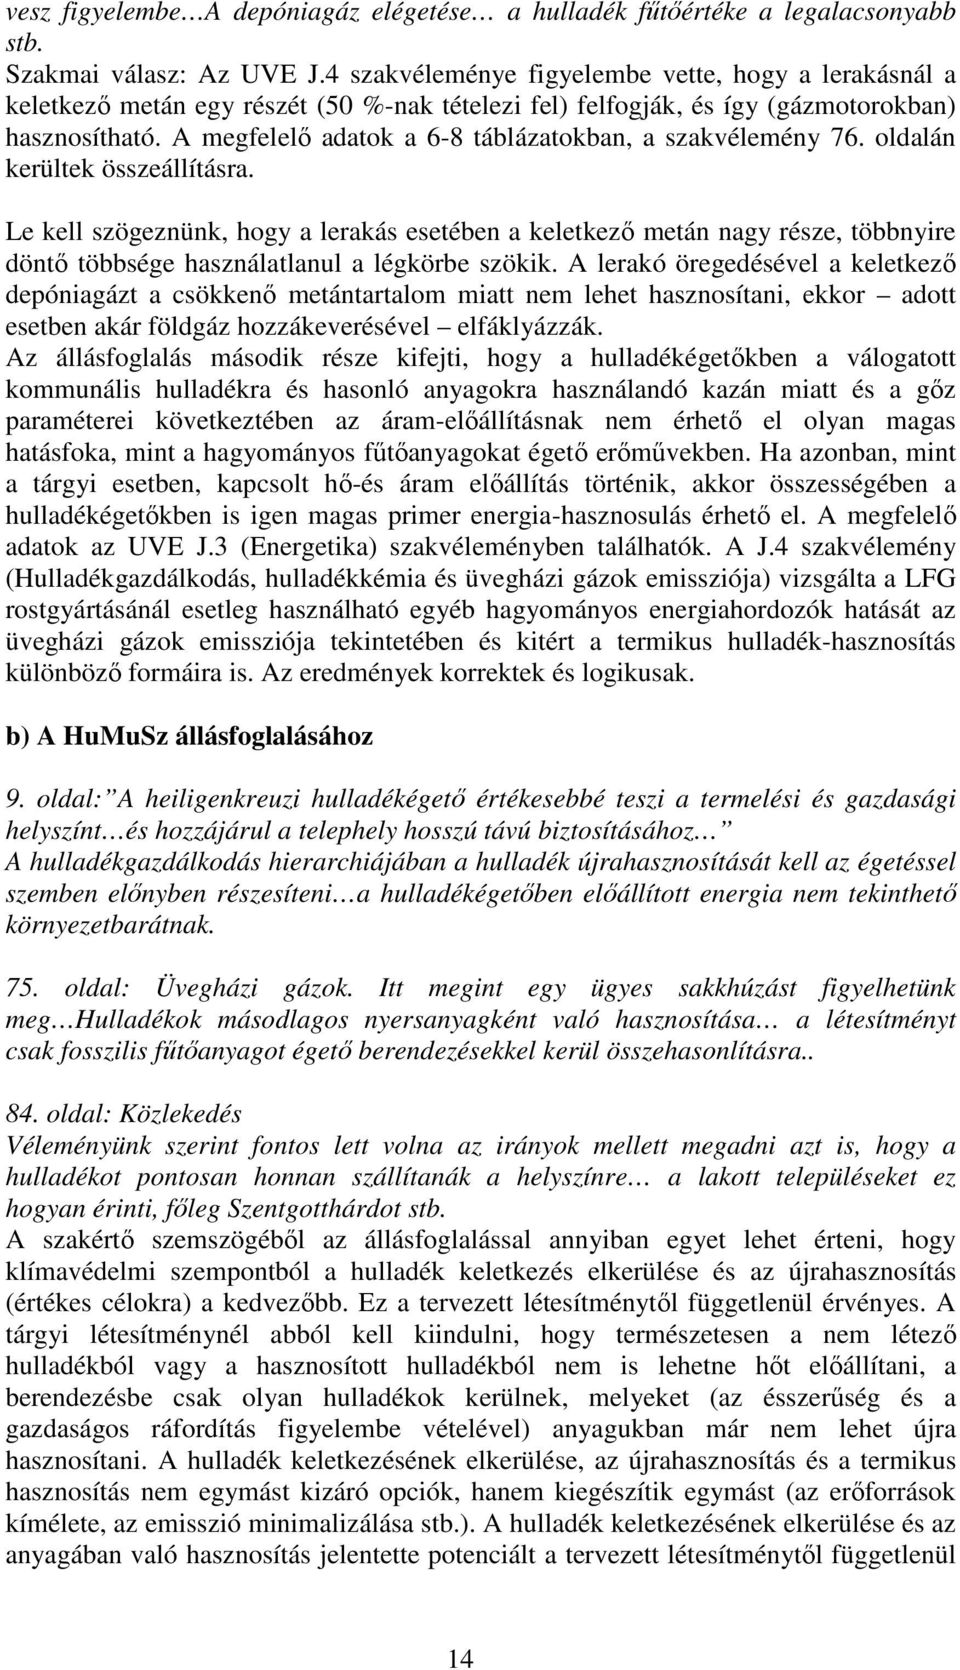 A megfelelı adatok a 6-8 táblázatokban, a szakvélemény 76. oldalán kerültek összeállításra.